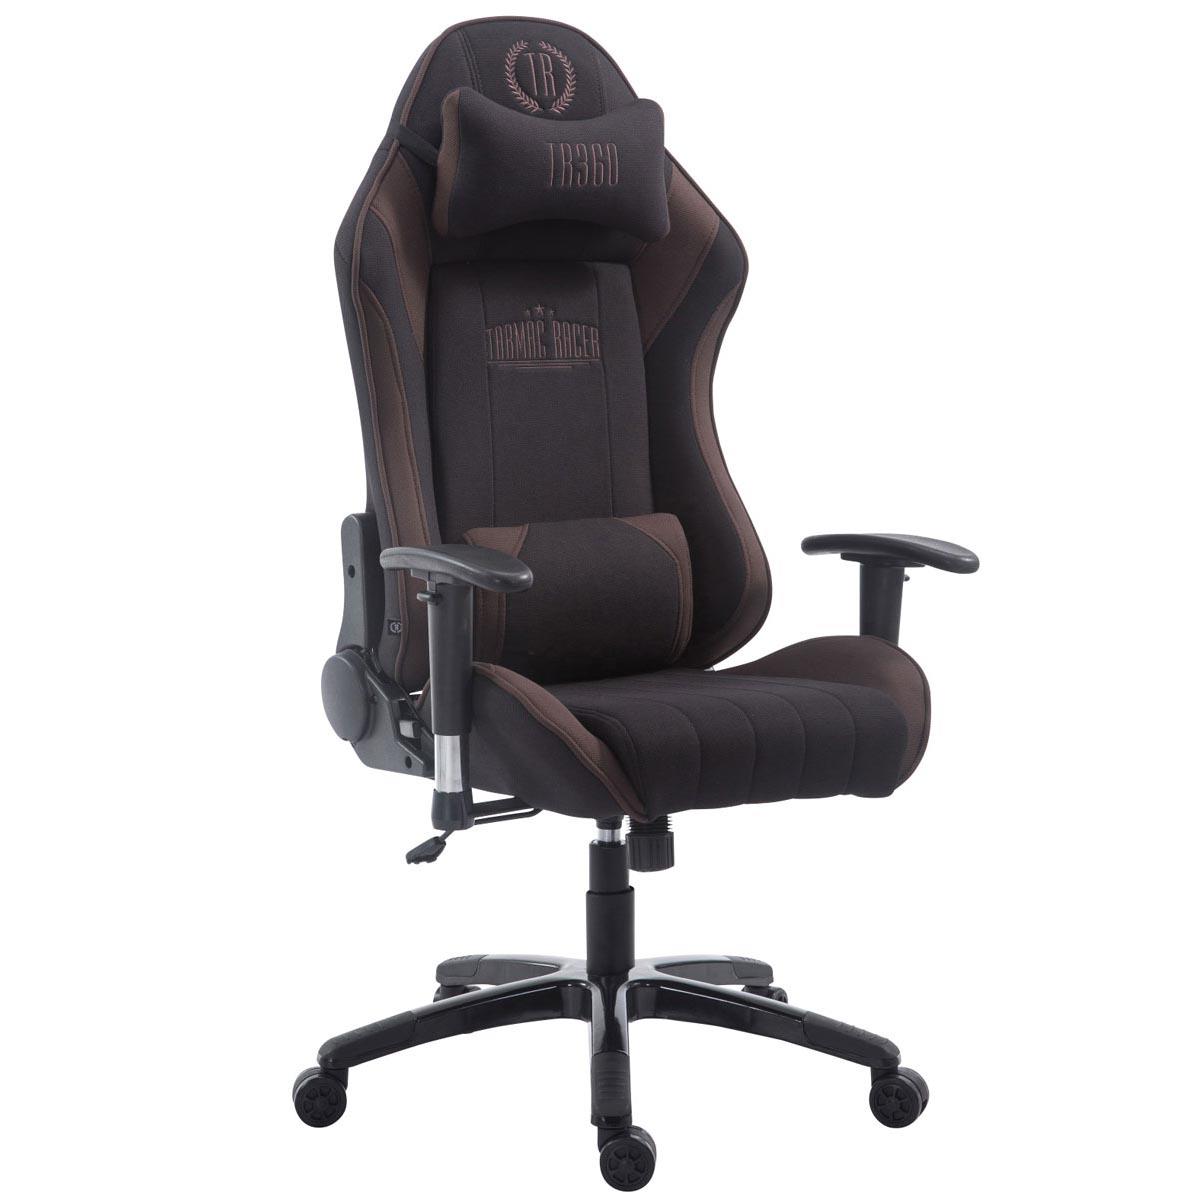 Gaming-Stuhl TURBO STOFF, neigbare Rückenlehne, Nacken- und Lordosekissen, Farbe Schwarz / Braun